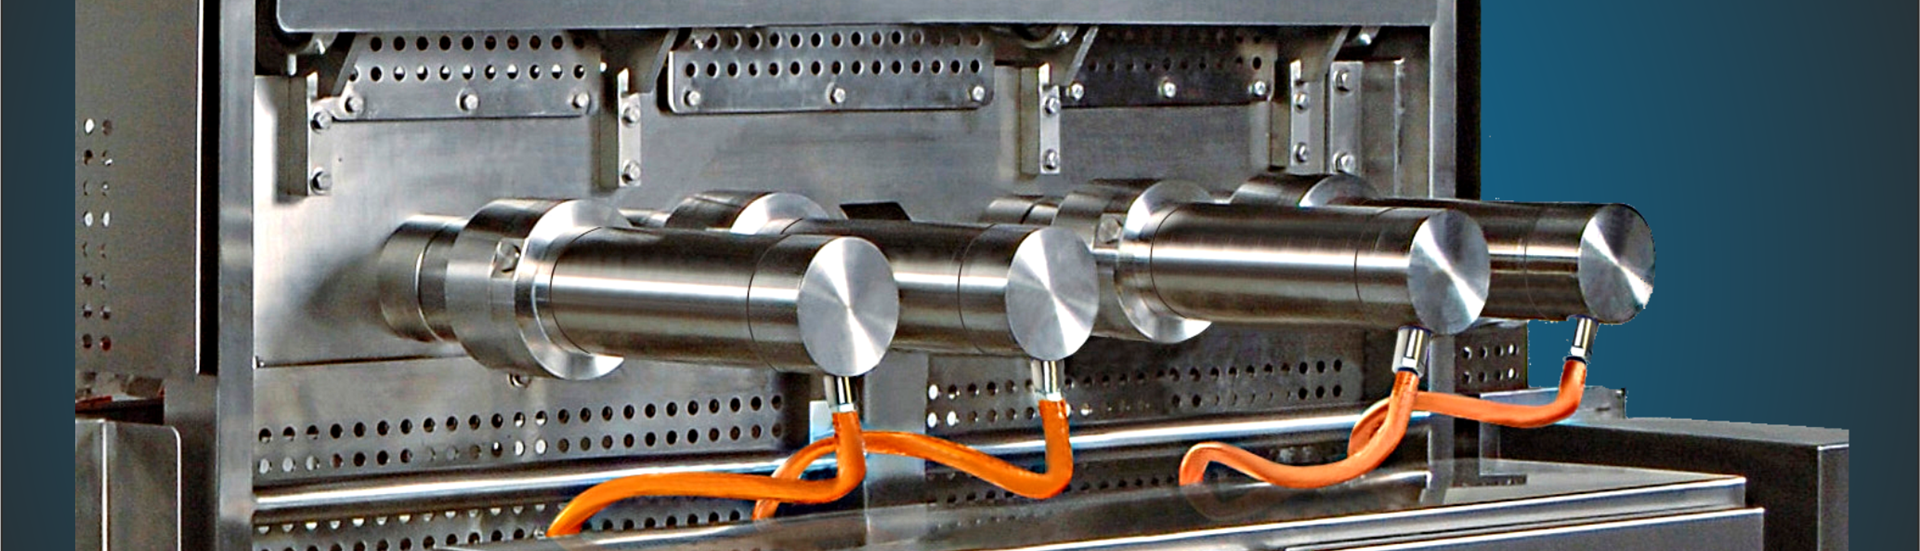 Topbillede med næroptagelse af fødevaremaskine med 4 blanke motorer forbundet med et-kabel-løsning